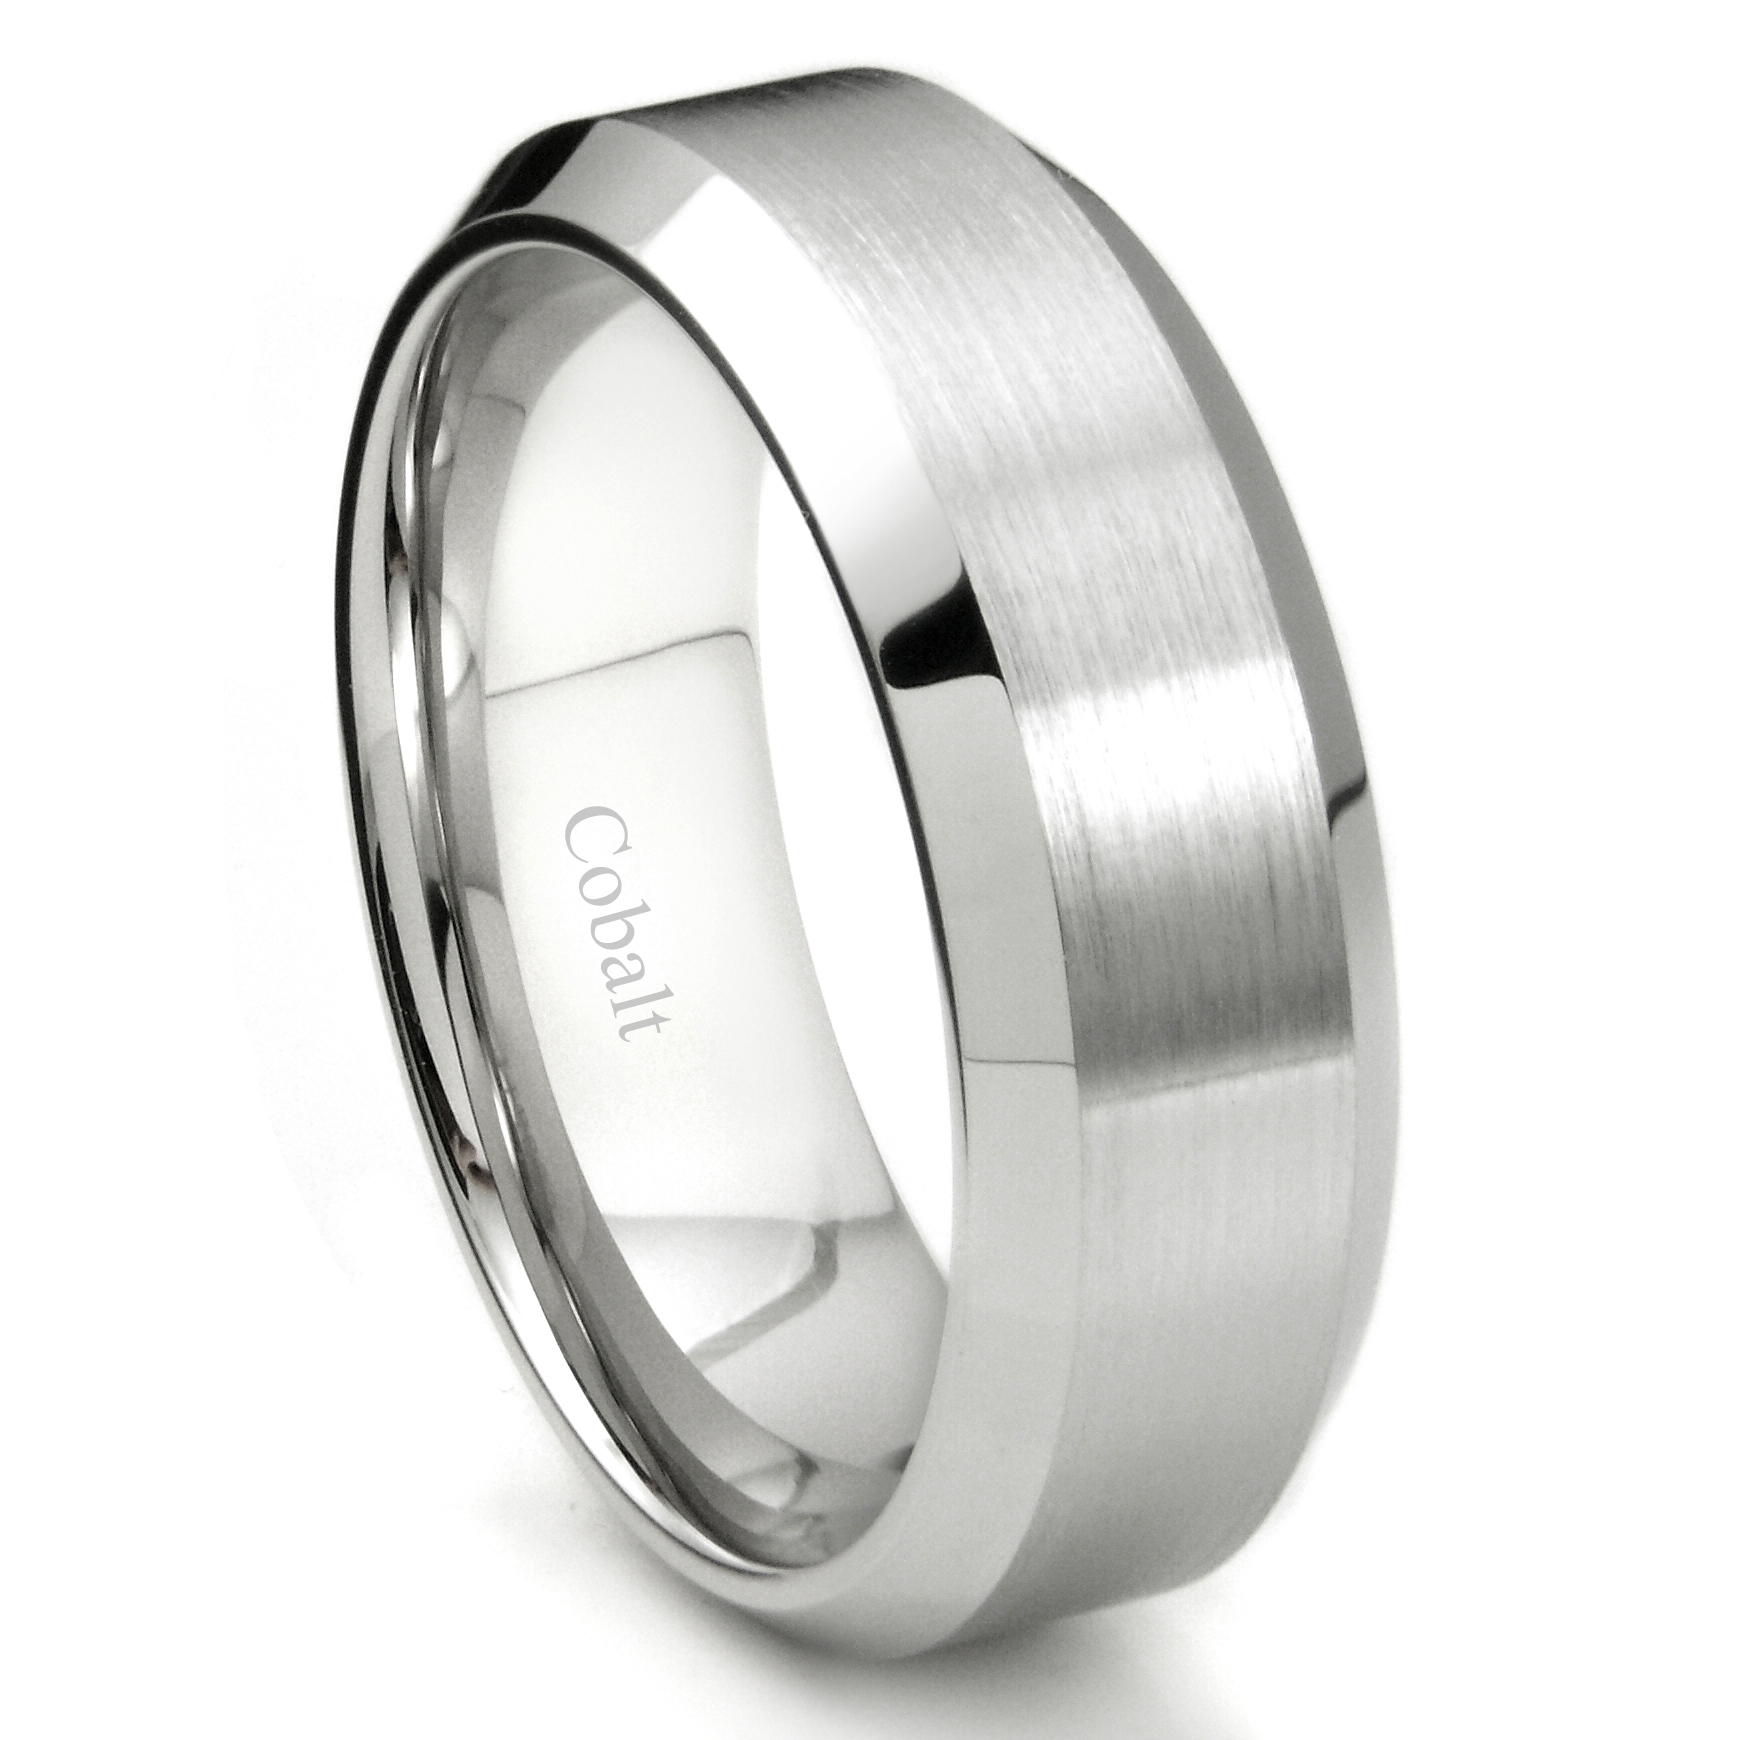 5mm Beveled Cobalt Wedding Band Women's Brushed Comfort Fit Cobalt Chrome Ring